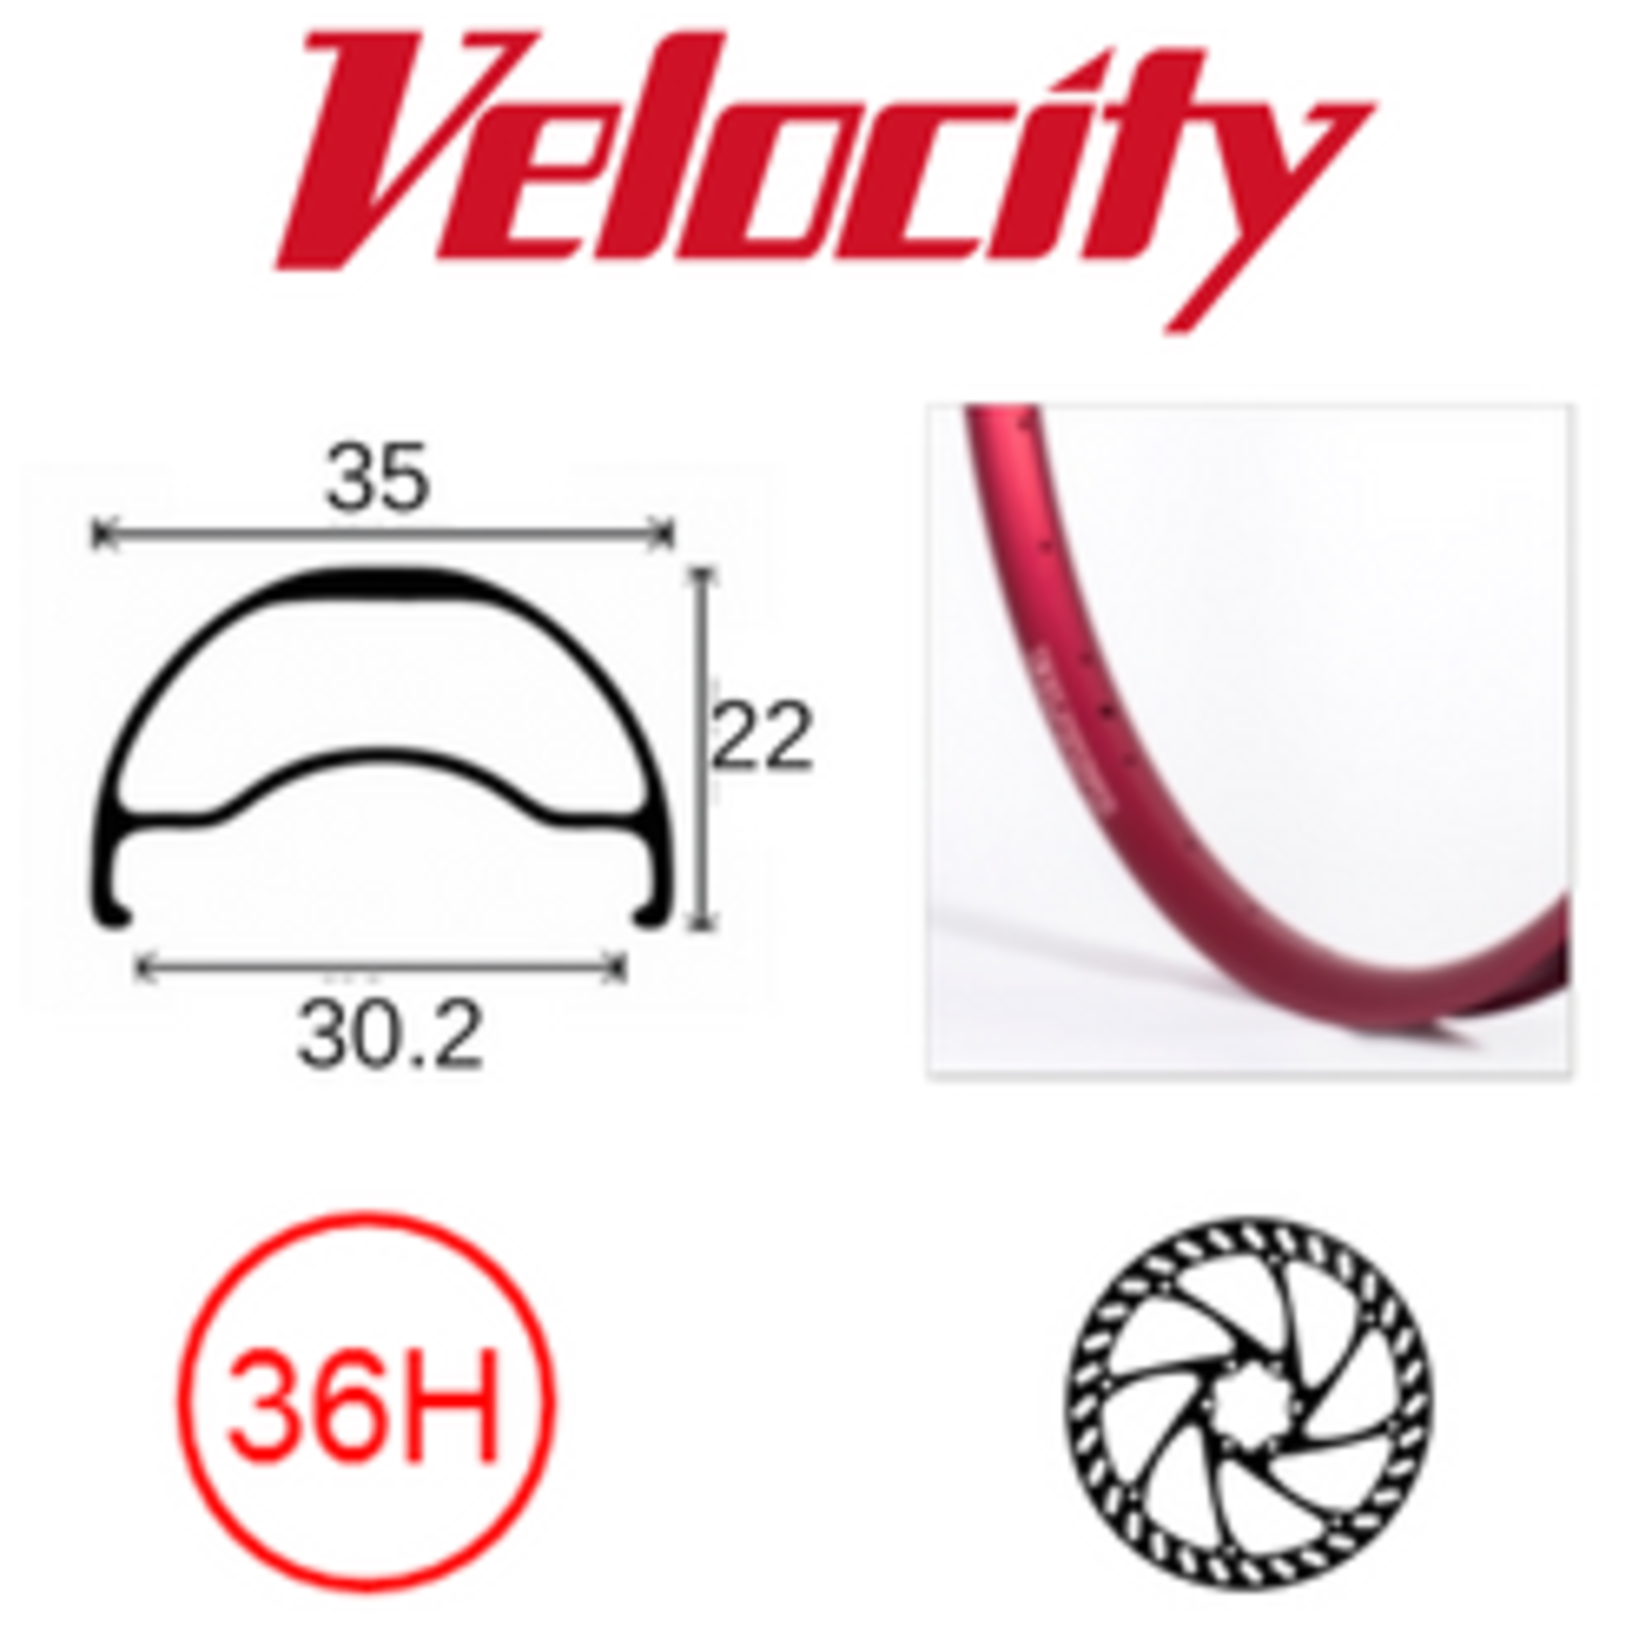 velocity Velocity Rim - Blunt 35- 700C (622) 36H - Presta Valve - Disc Brake - D/W - Red